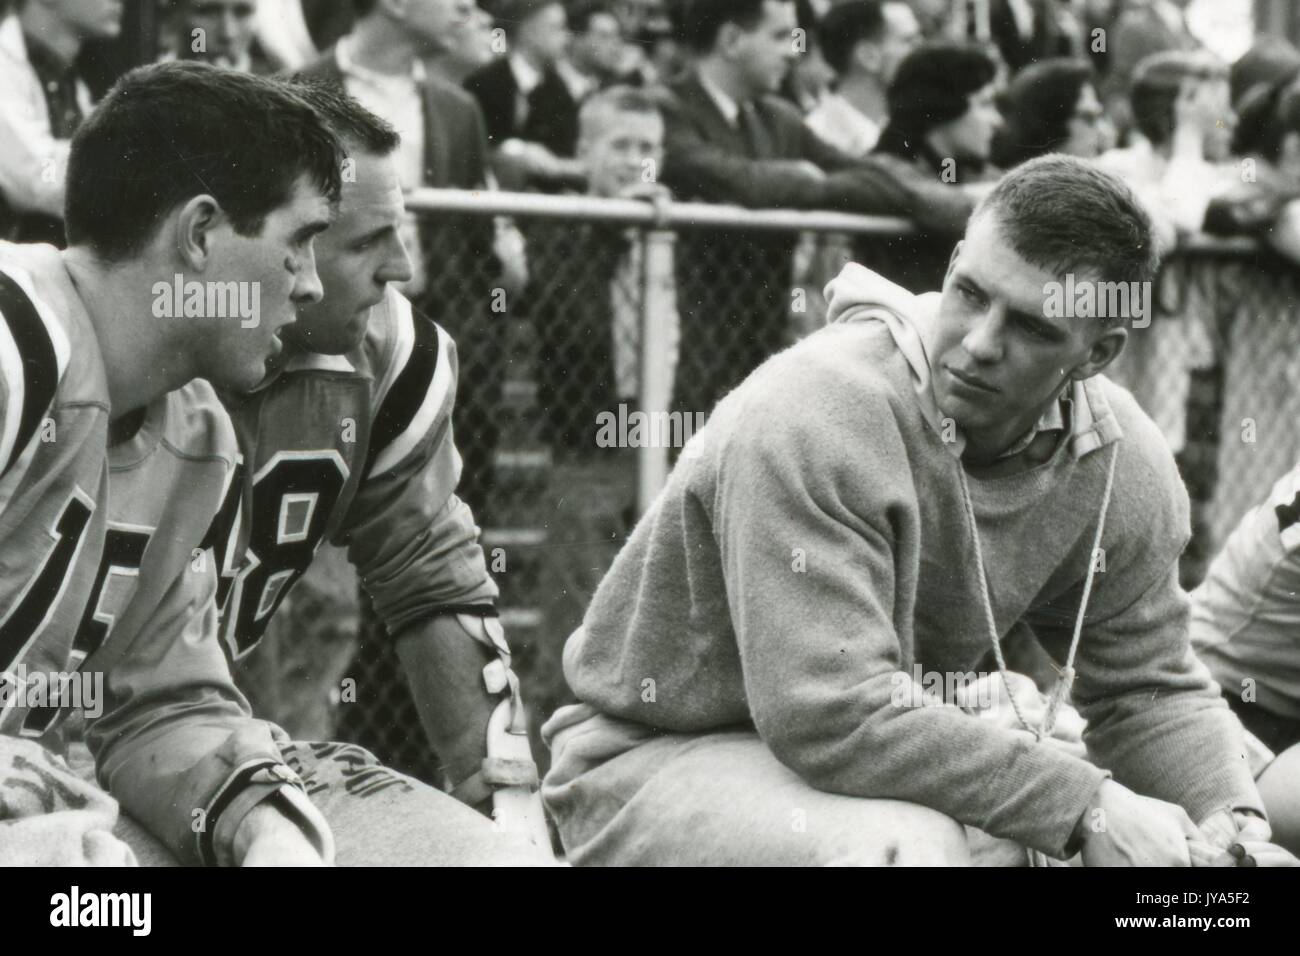 Un giovane giocatore di lacrosse maschile della Johns Hopkins University che indossa una felpa sopra la sua divisa si siede su una panchina mentre parla con due compagni di squadra in uniforme, una folla di spettatori che si trovano dietro una recinzione sullo sfondo, 1960. Foto Stock